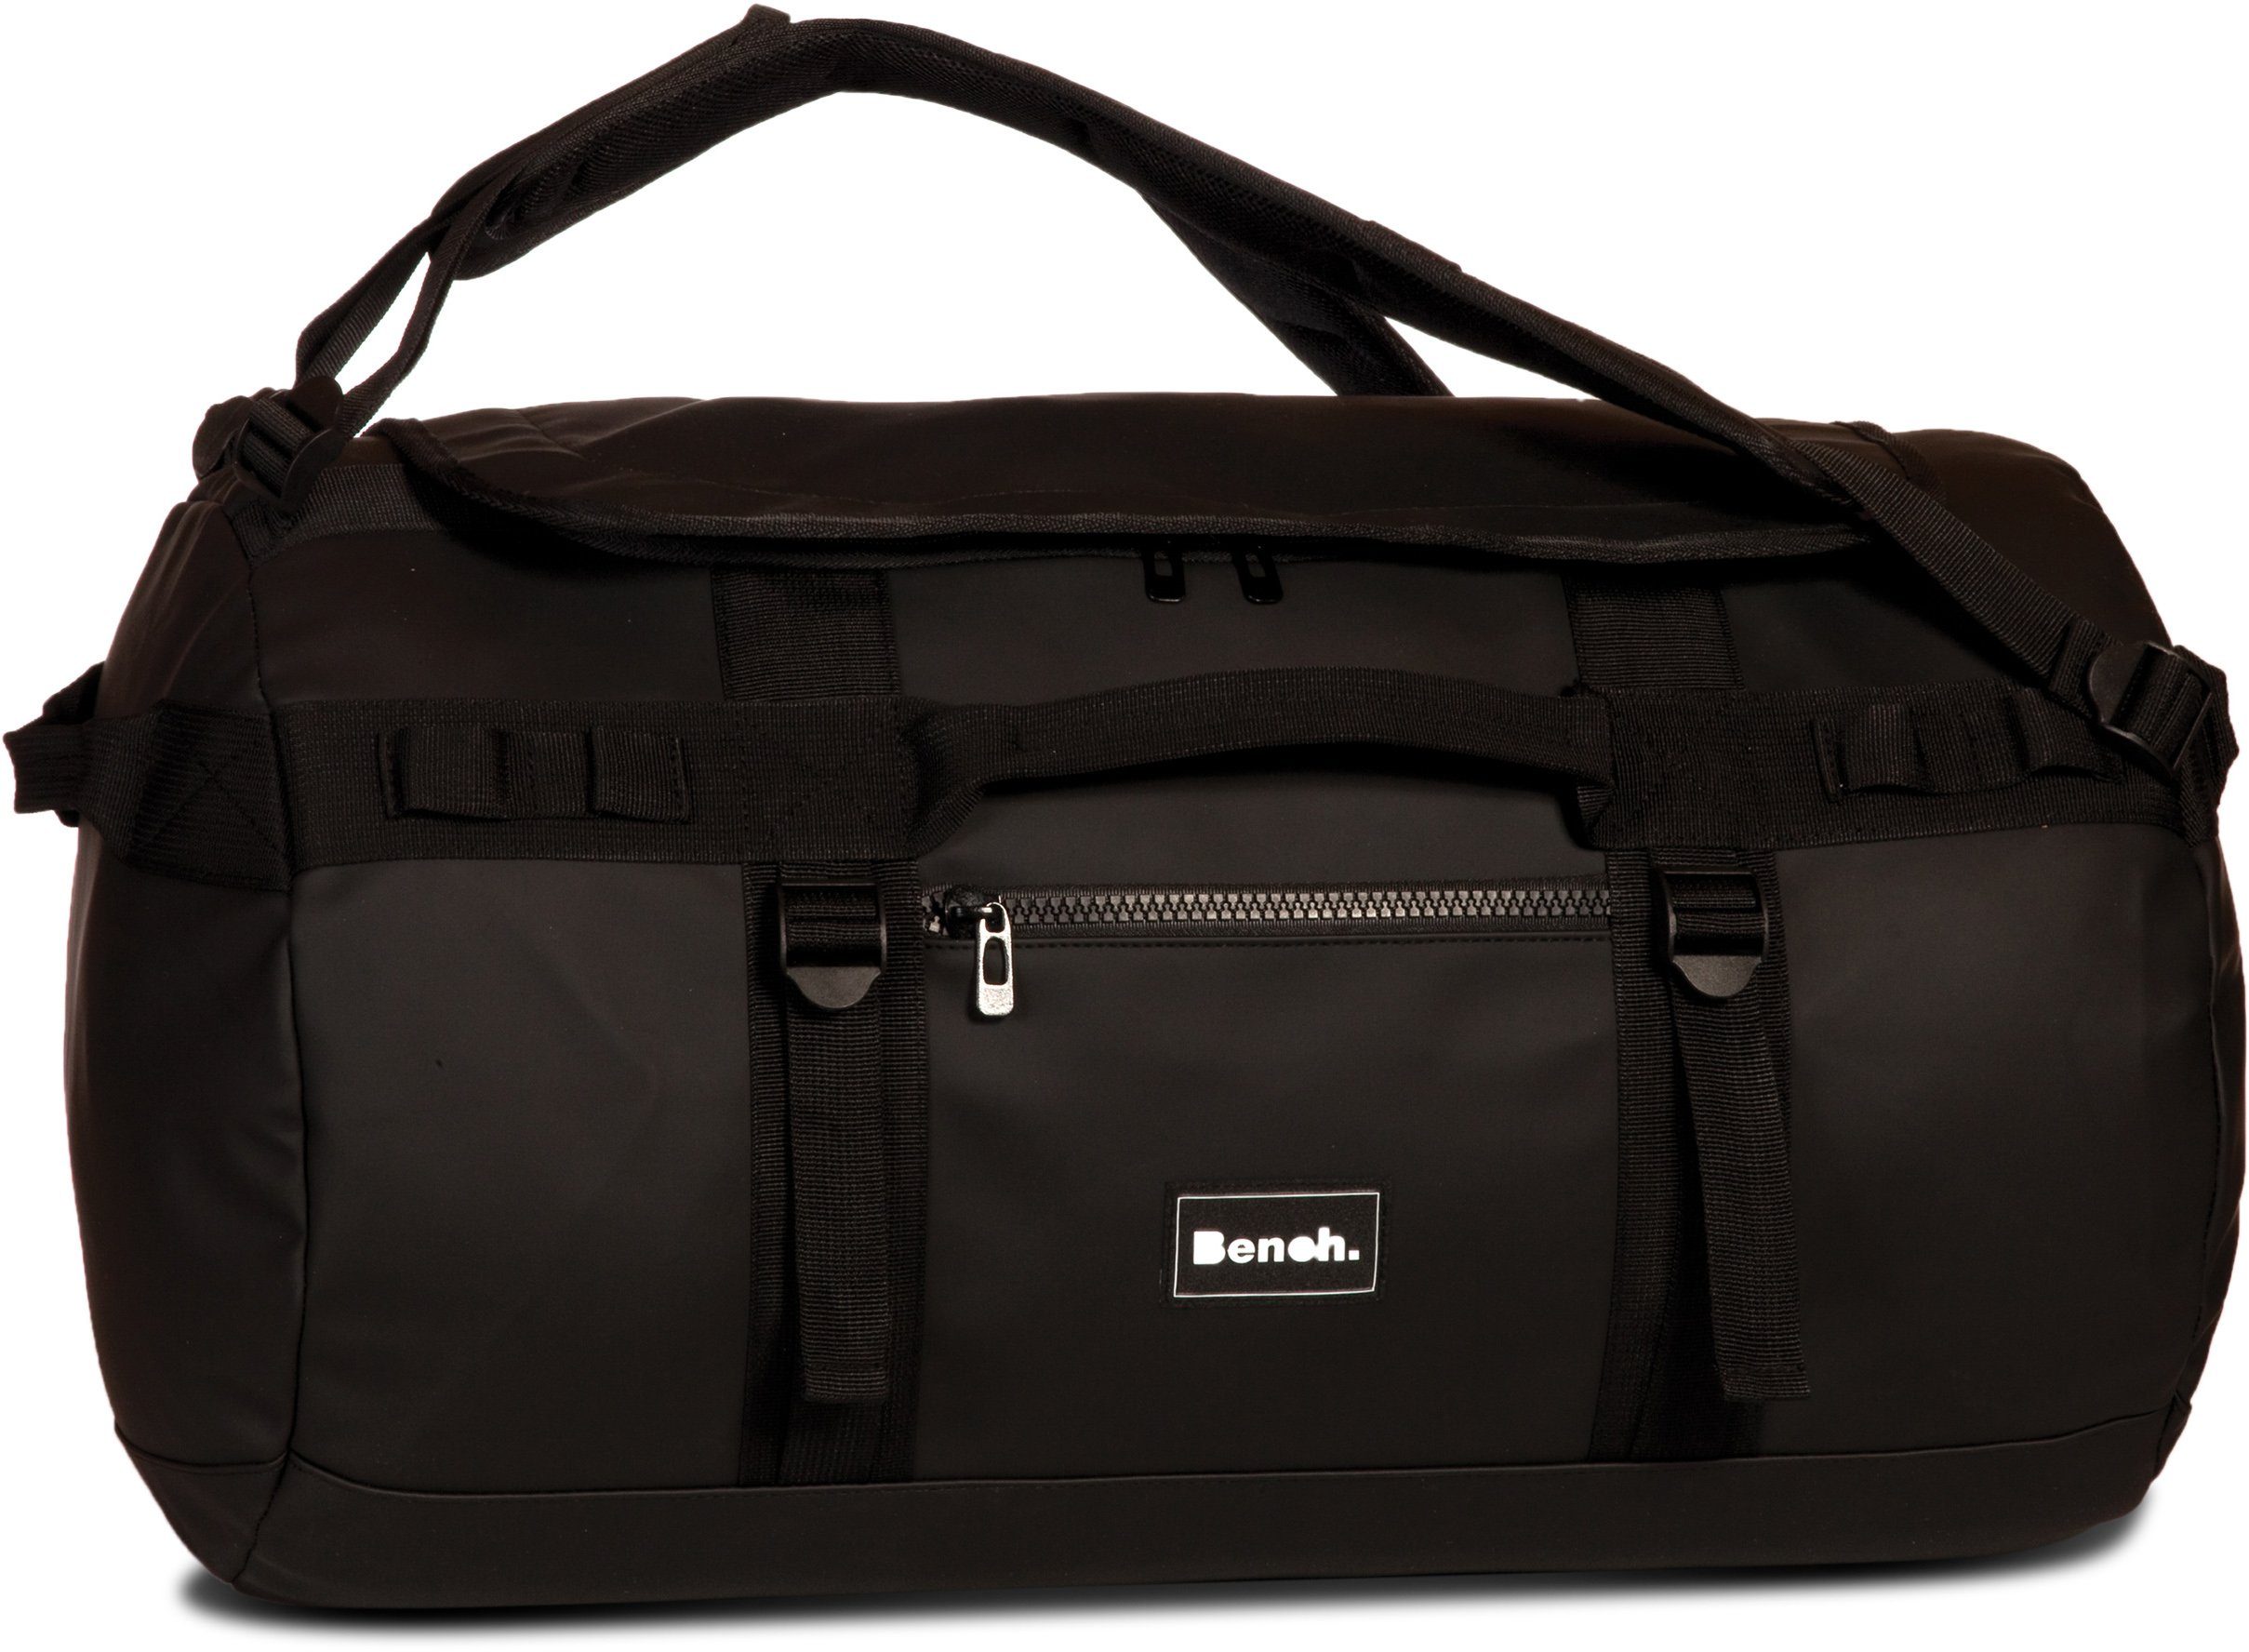 Reisetasche Bench. Rucksackfunktion; mit Material schwarz, Hydro, wasserabweisendem aus